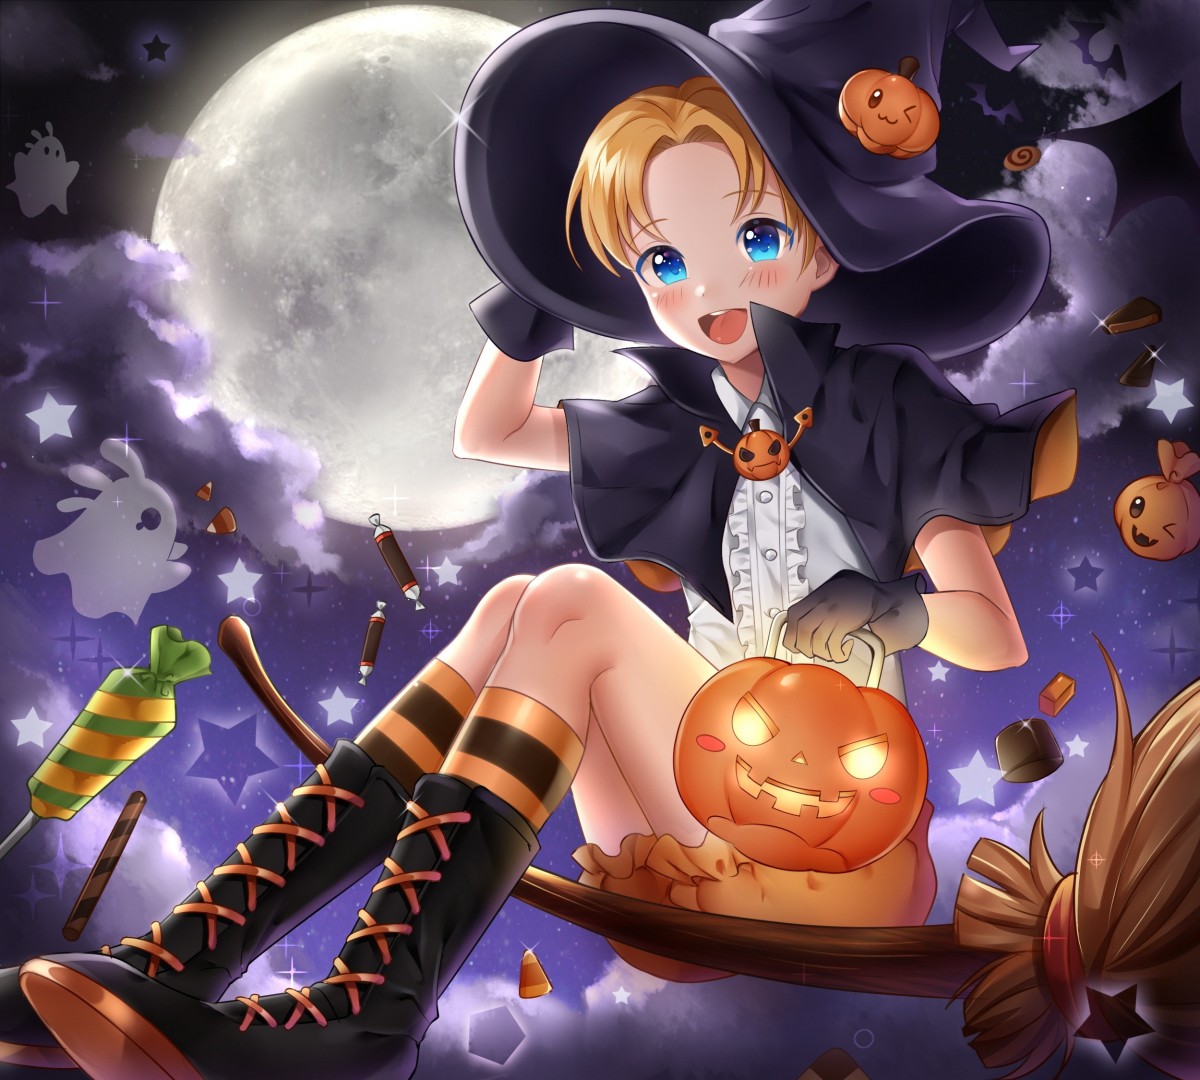 луна #ночь #девушка #аниме #ведьма #праздник #Хэллоуин #тыква #магия #фэнте...